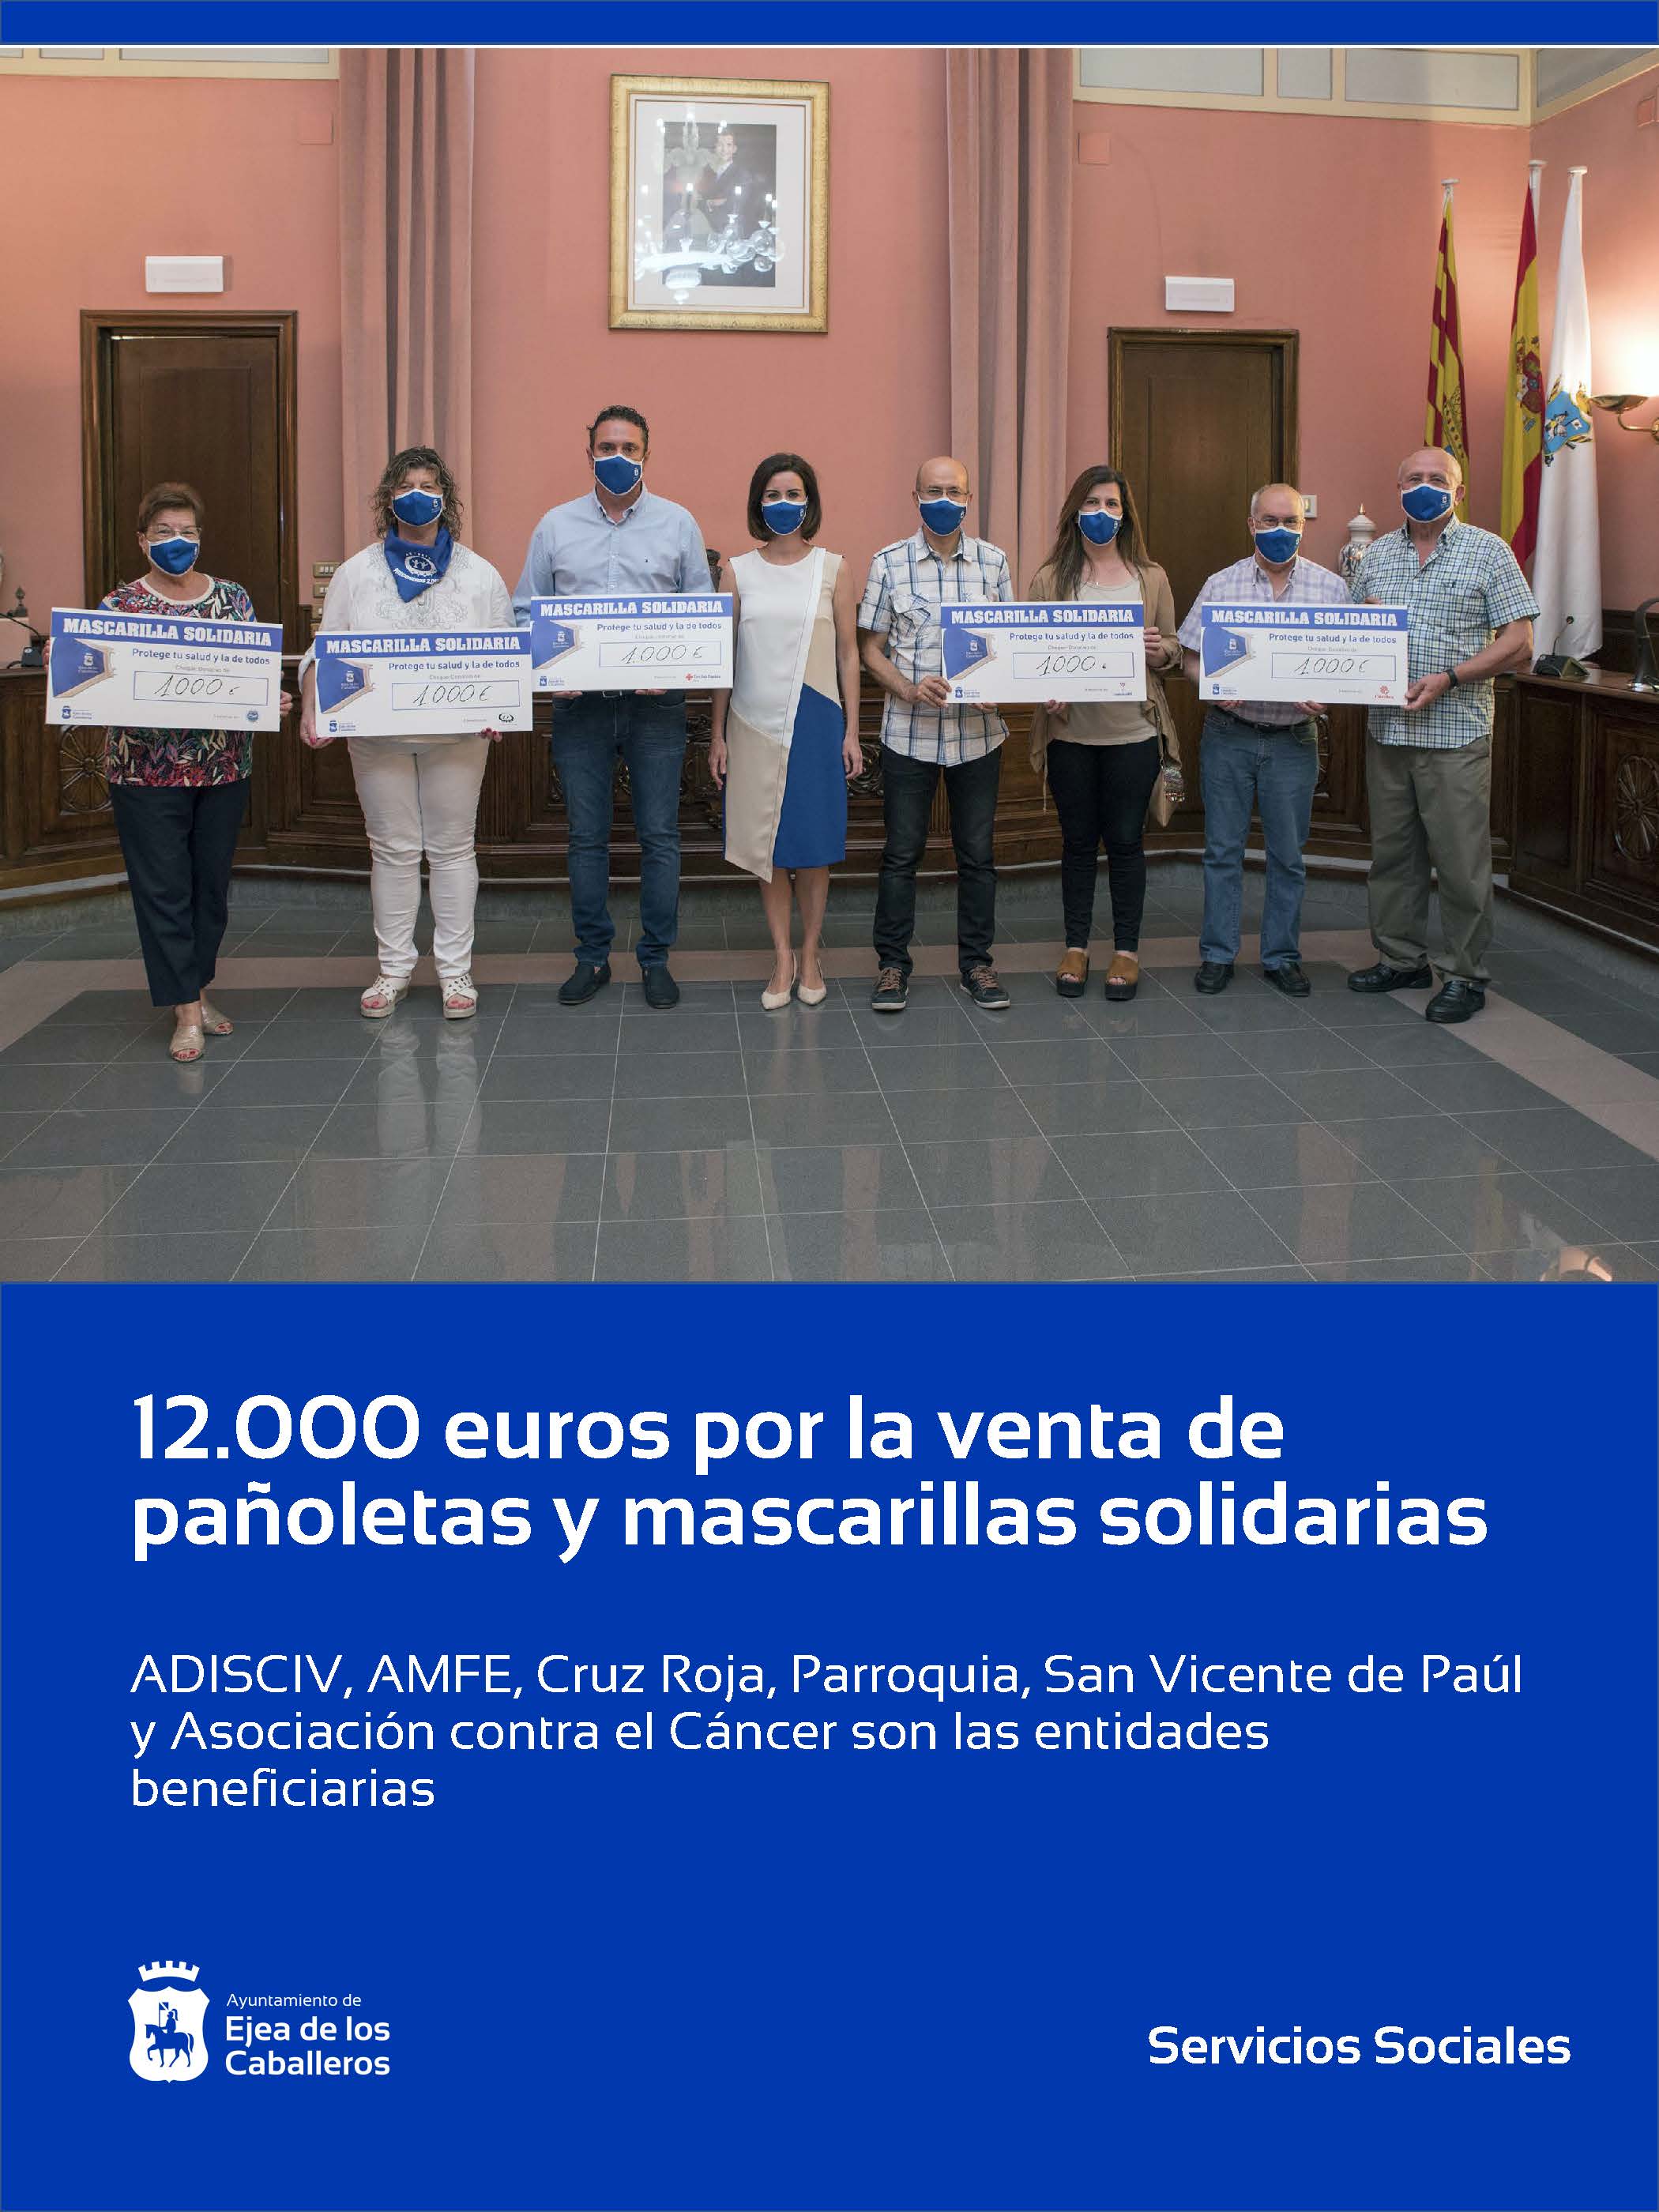 En este momento estás viendo Las entidades sociales de Ejea de los Caballeros reciben 12.000 euros por la venta de mascarillas y pañoletas solidarias